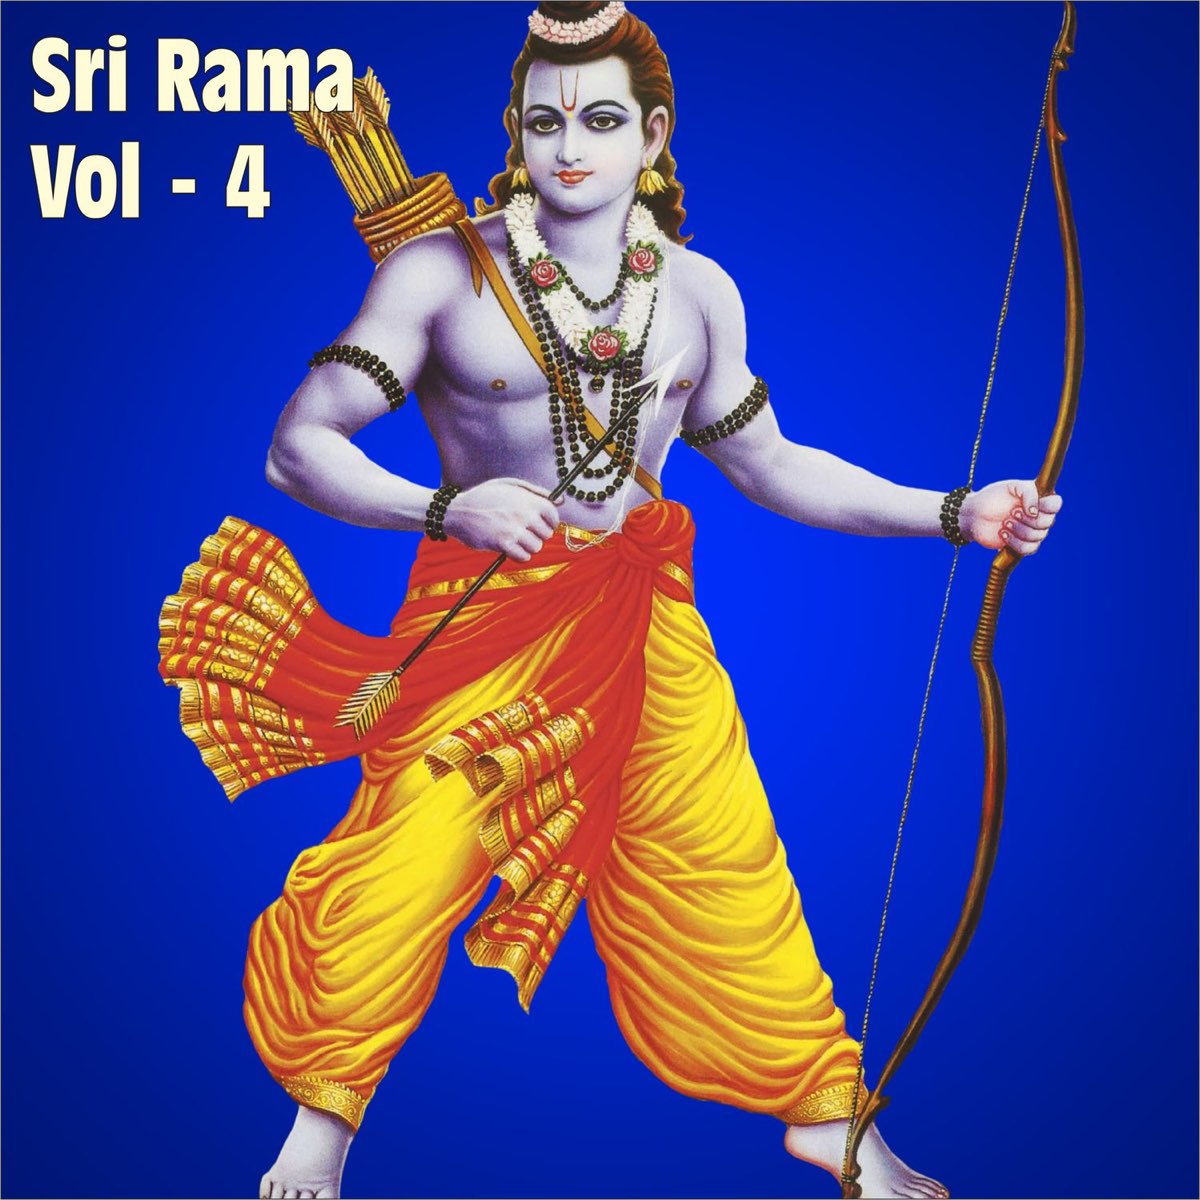 Sri Rama. Vol. 4 by Rameshchandra, P. Unnikrishnan & Myuzic ...